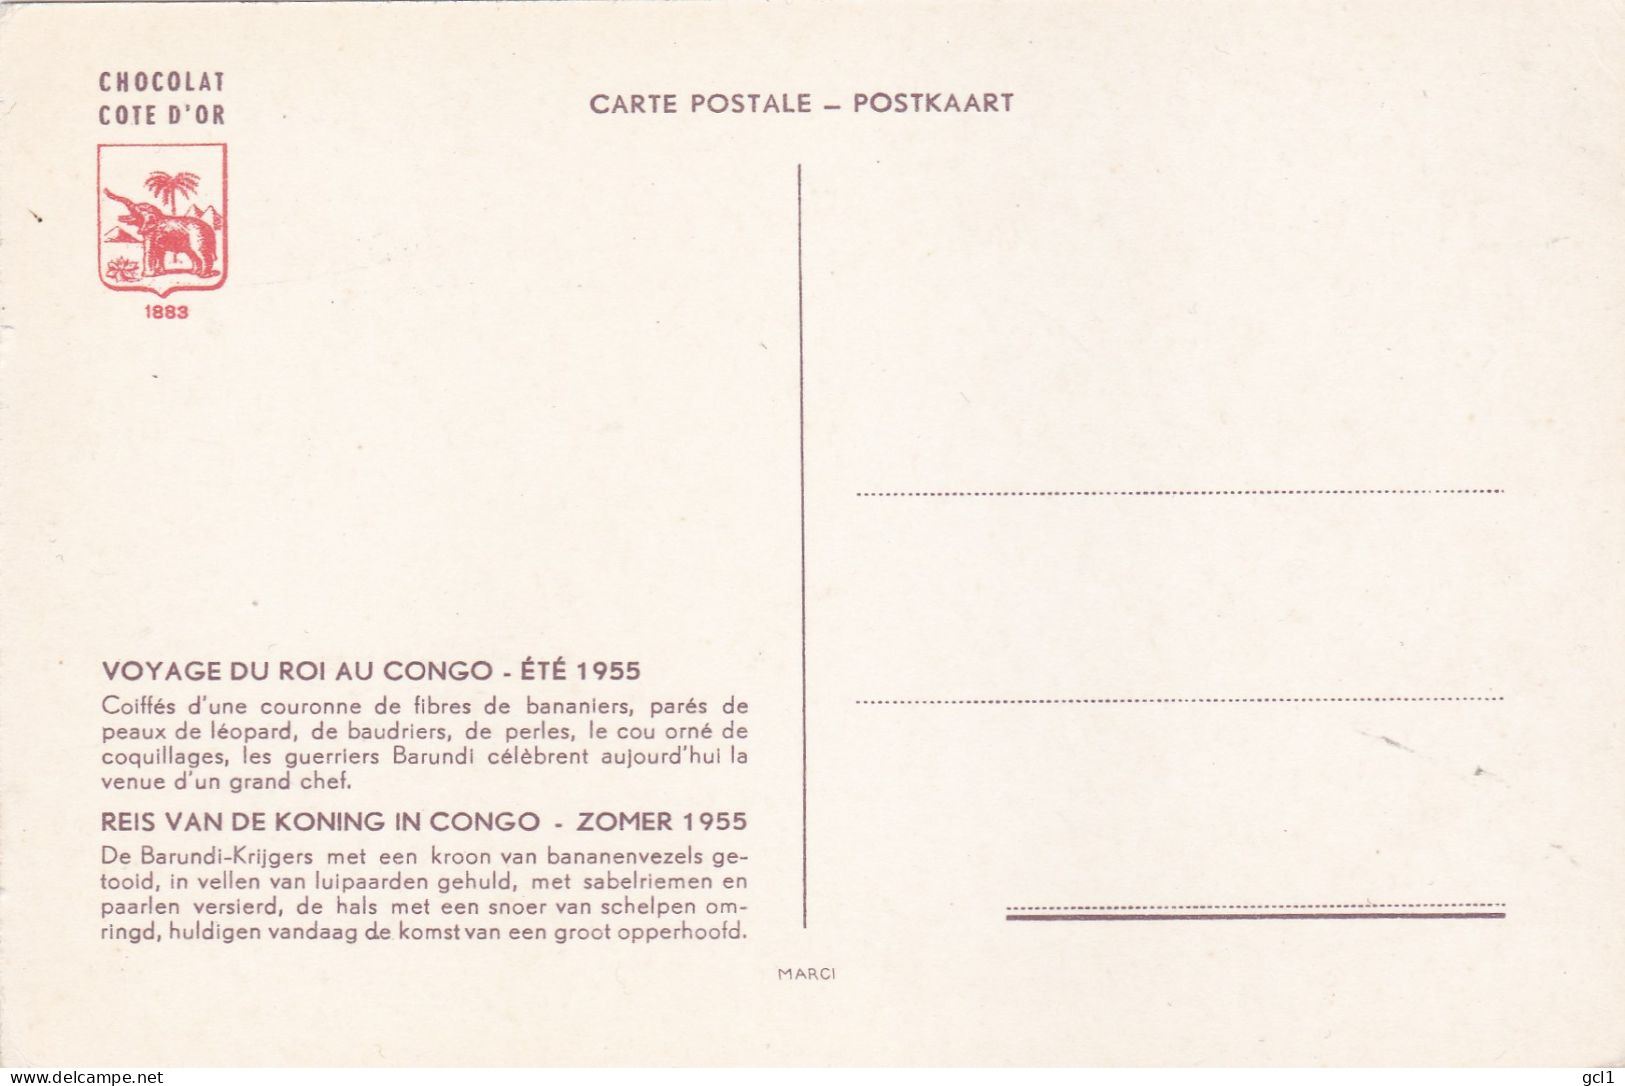 Reis Van De Koning In Congo -Zomer 1955 - 15 Stuks Van Cote D' Or Chocolade - Sammlungen & Sammellose